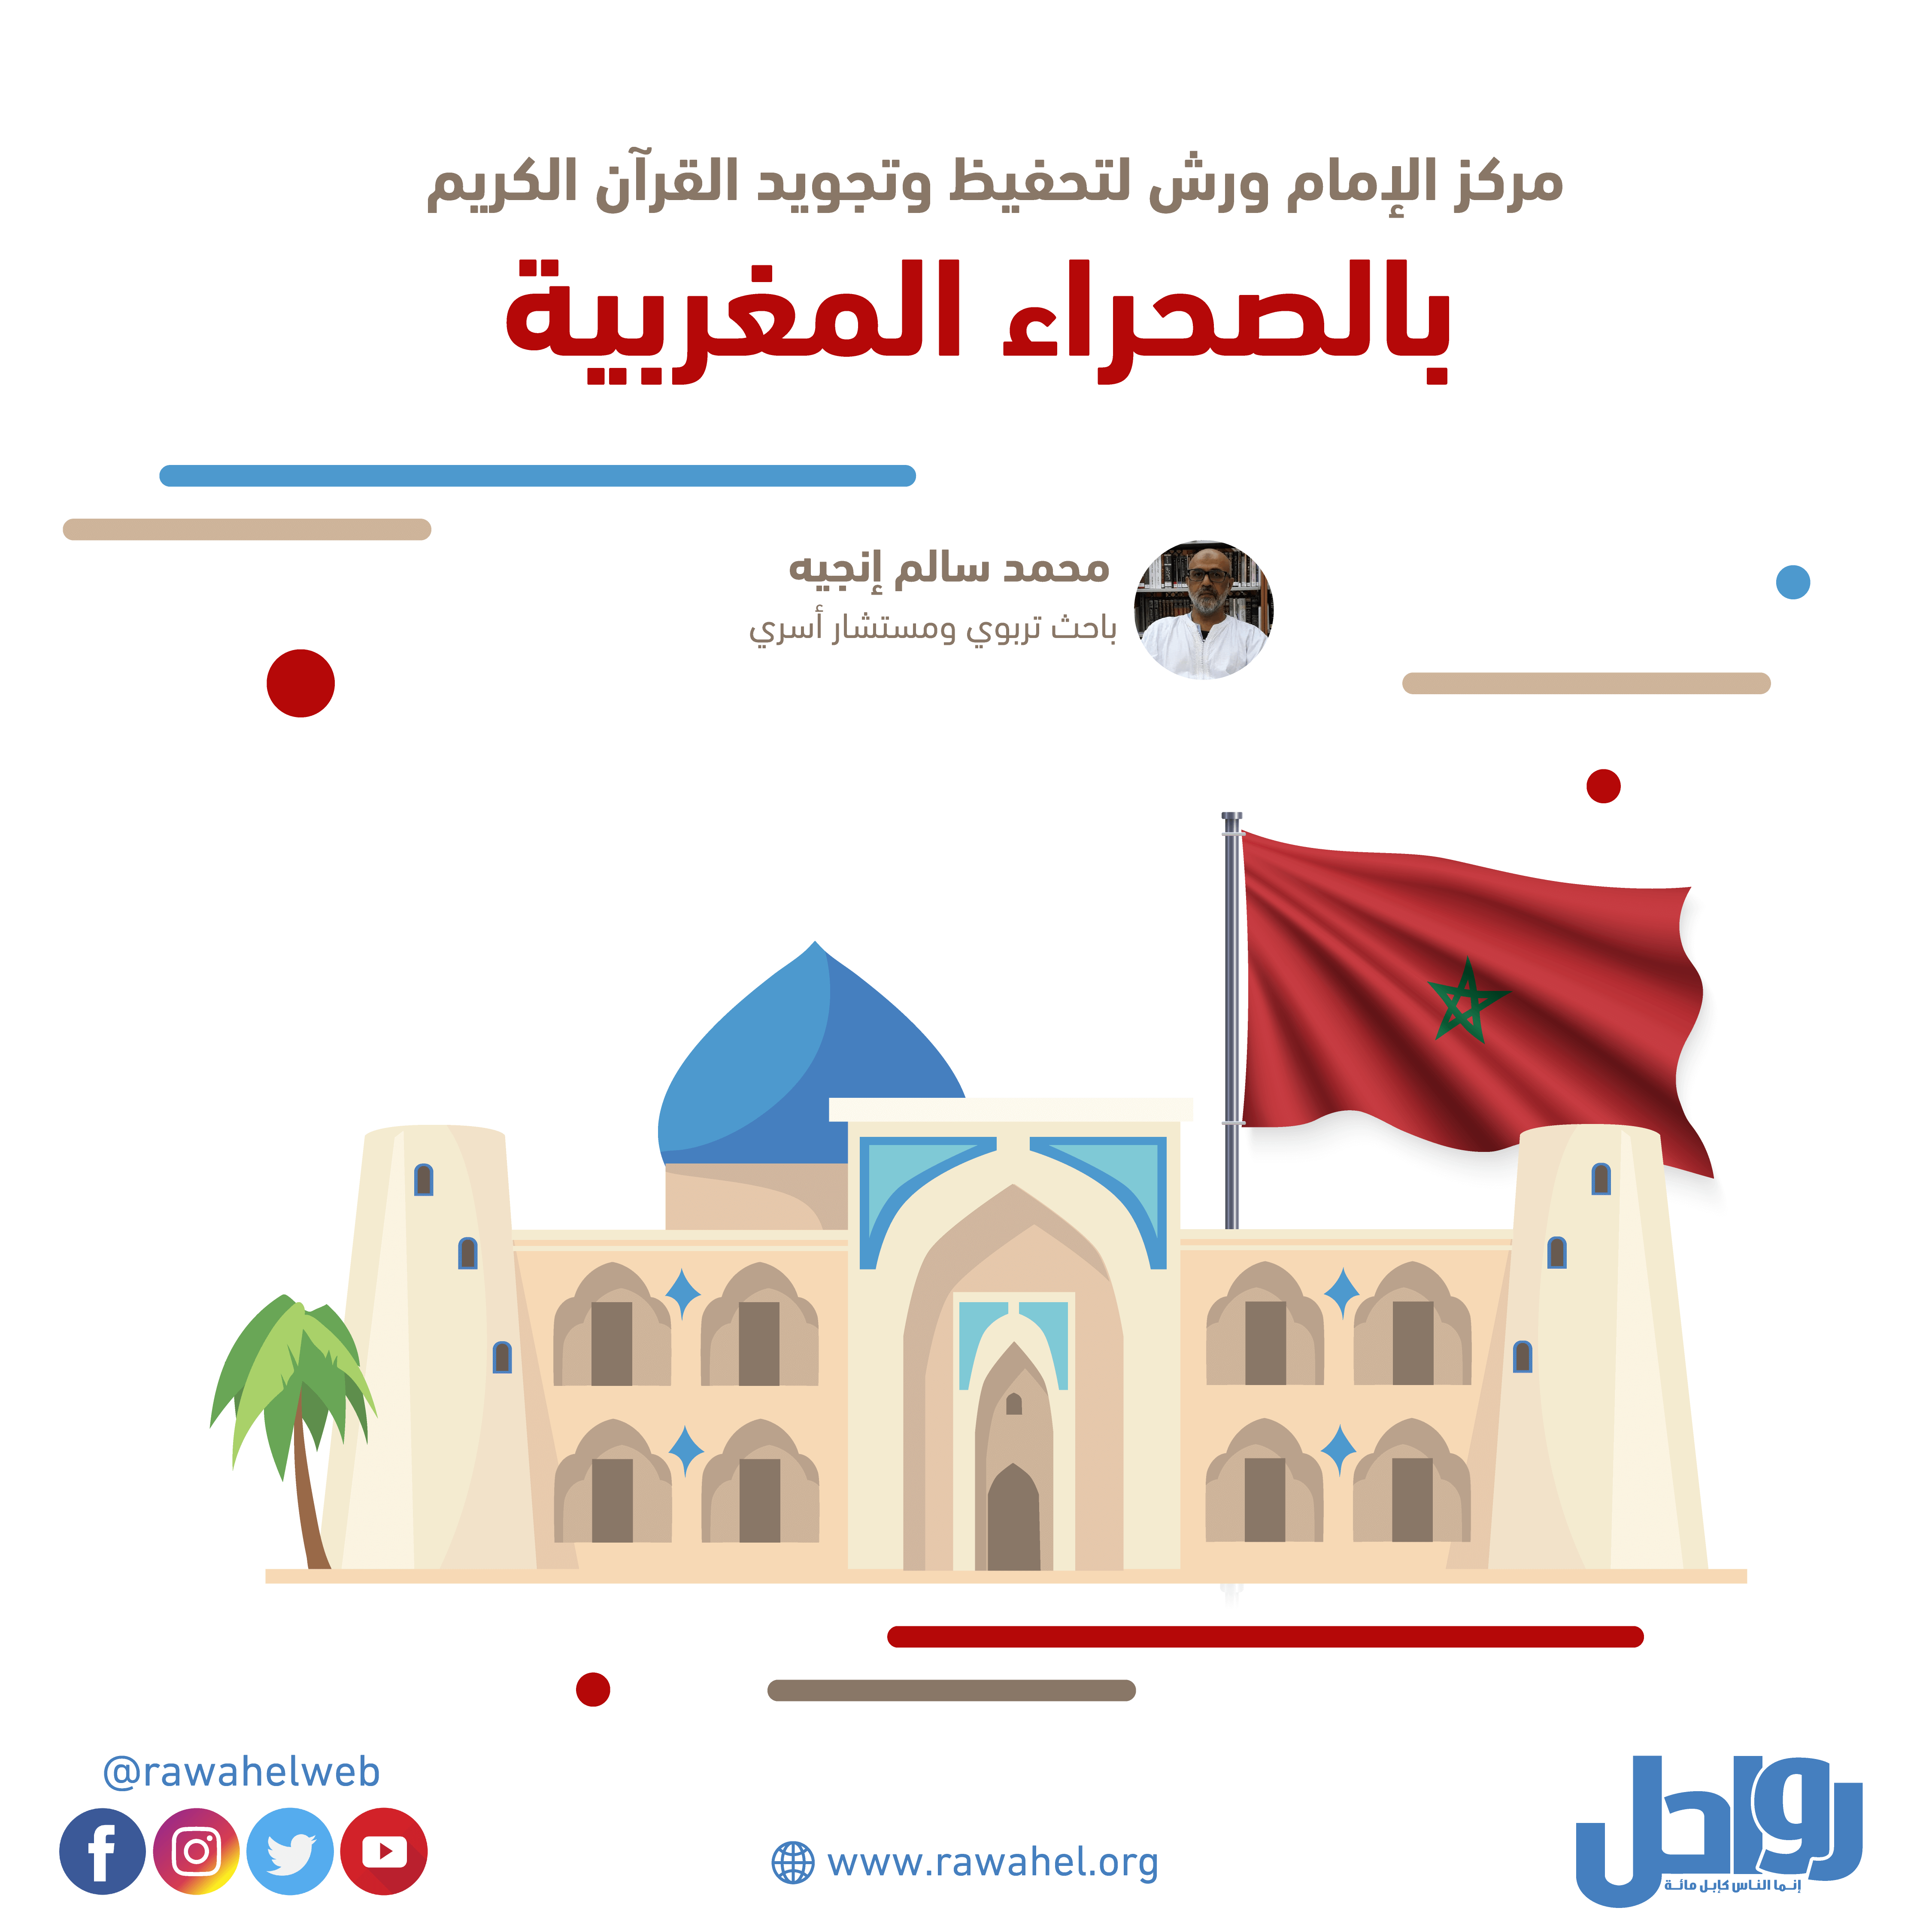 مركز الإمام ورش لتحفيظ وتجويد القرآن الكريم بالصحراء المغربية